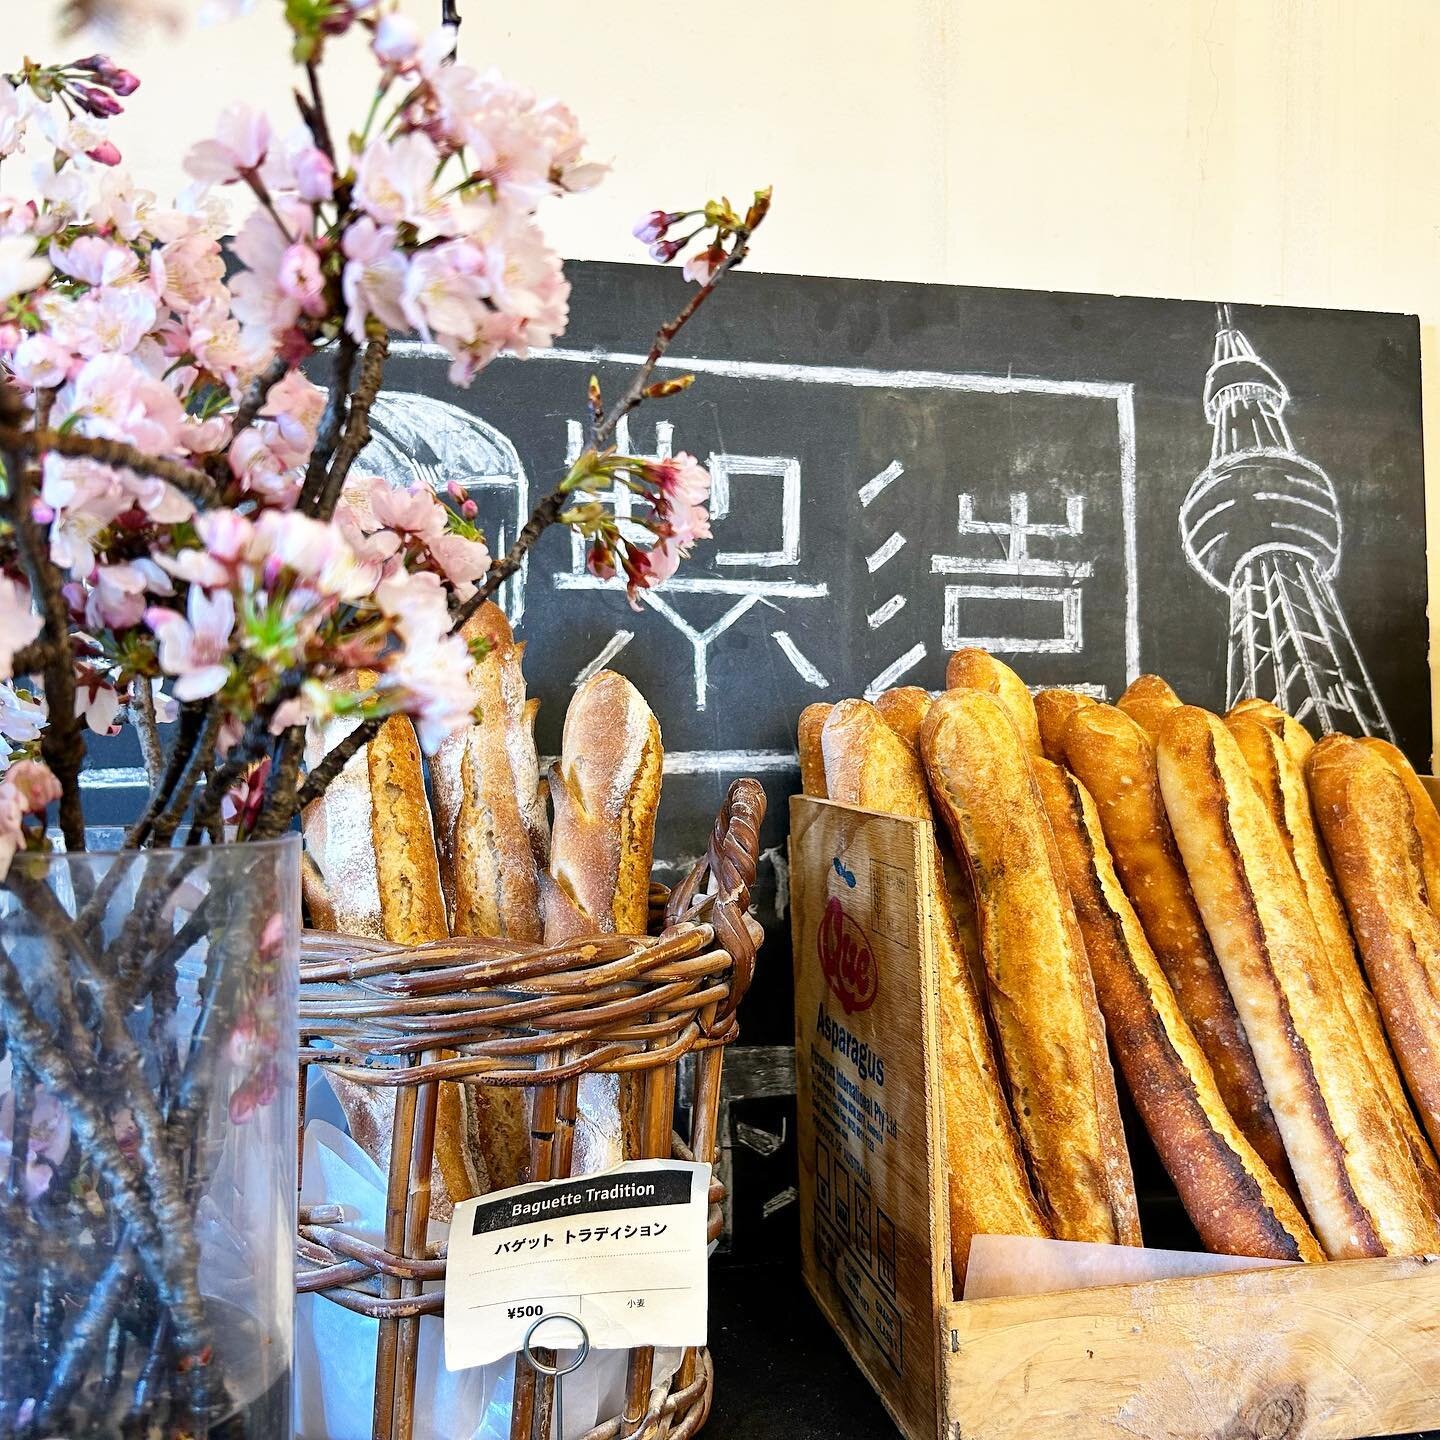 本日3/9(土)13時～OPENします🥐
今日はとても天気がいいので是非この機会にお越しくださいませ😊
お待ちしております！

#asakusa #manufacture #factory #bread #bakery #homemade #pastry #gourmet #baker #bakersgonnabake #prove #scrumptious #yum #yummy #yumyum #tokyo #tokyogourmet
#asakusatokyo #tourism #to